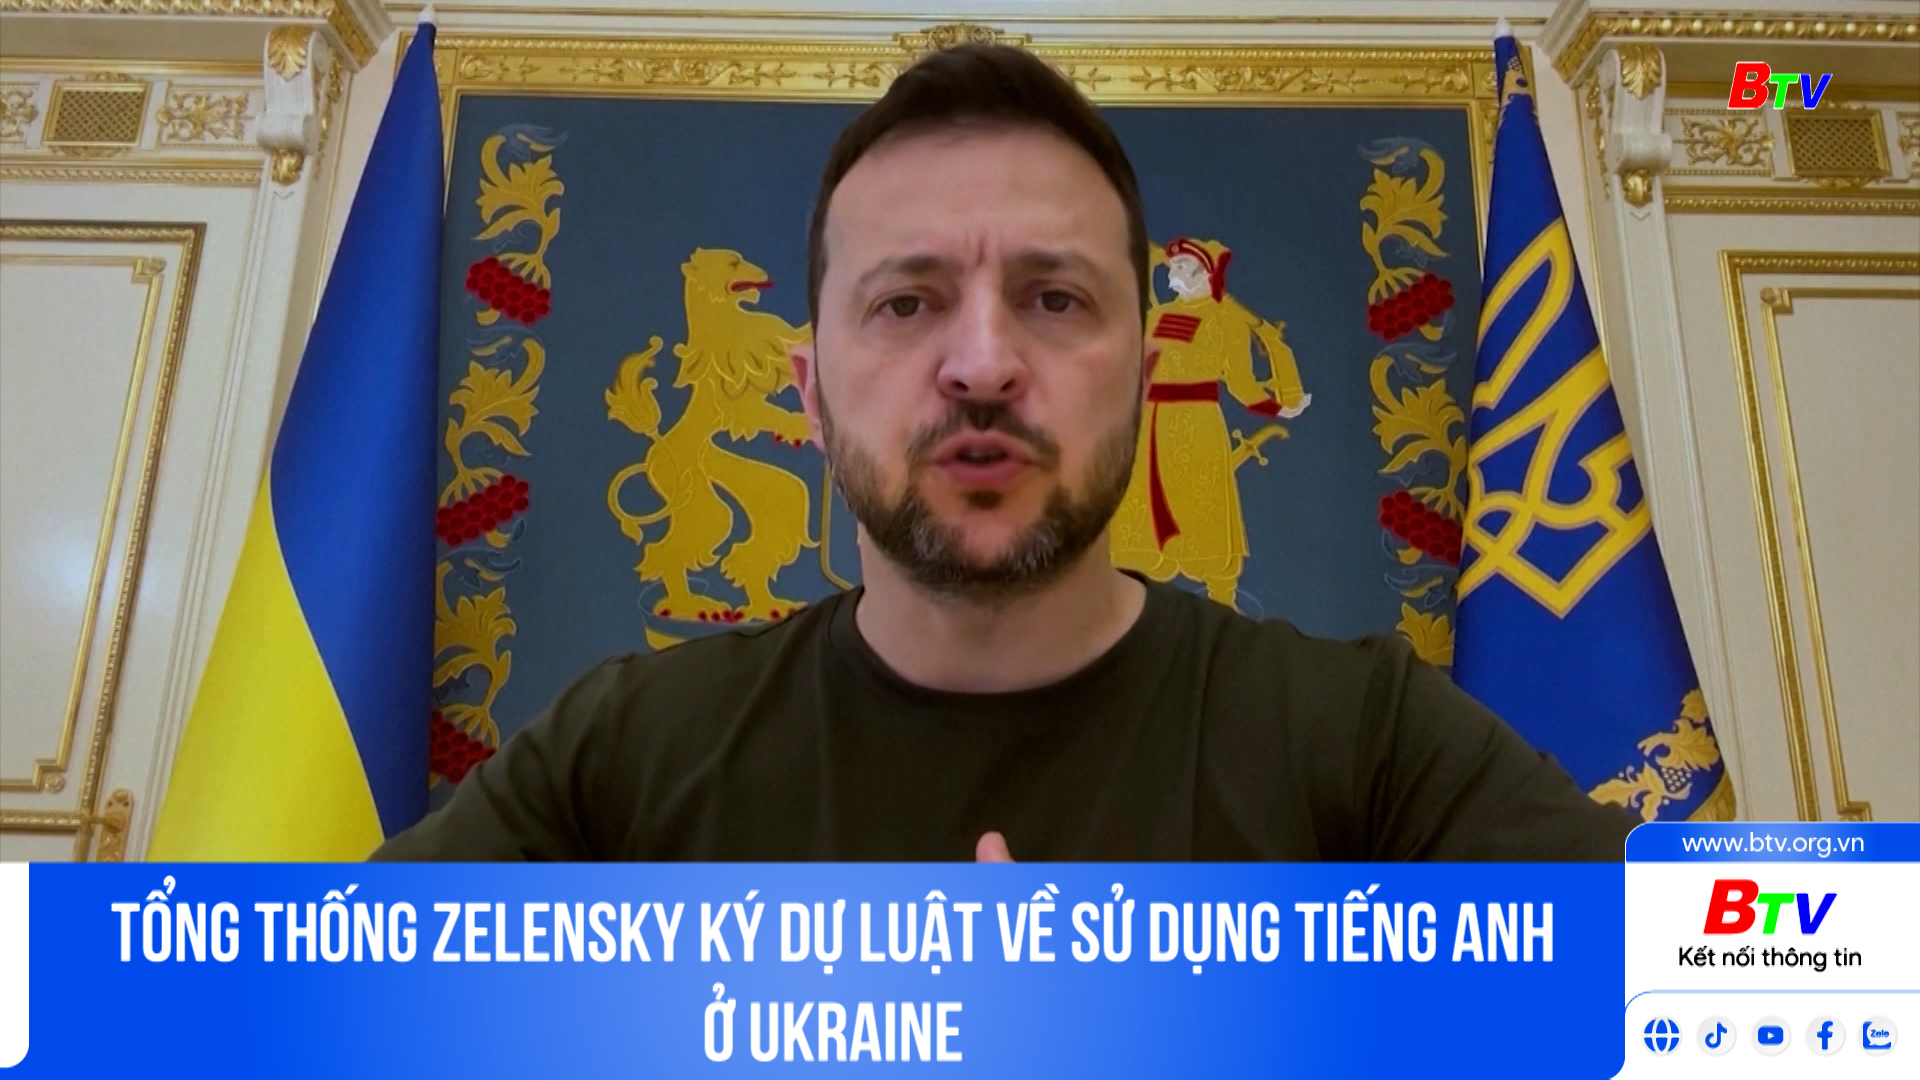 Tổng thống Zelensky ký Dự luật về sử dụng tiếng Anh ở Ukraine